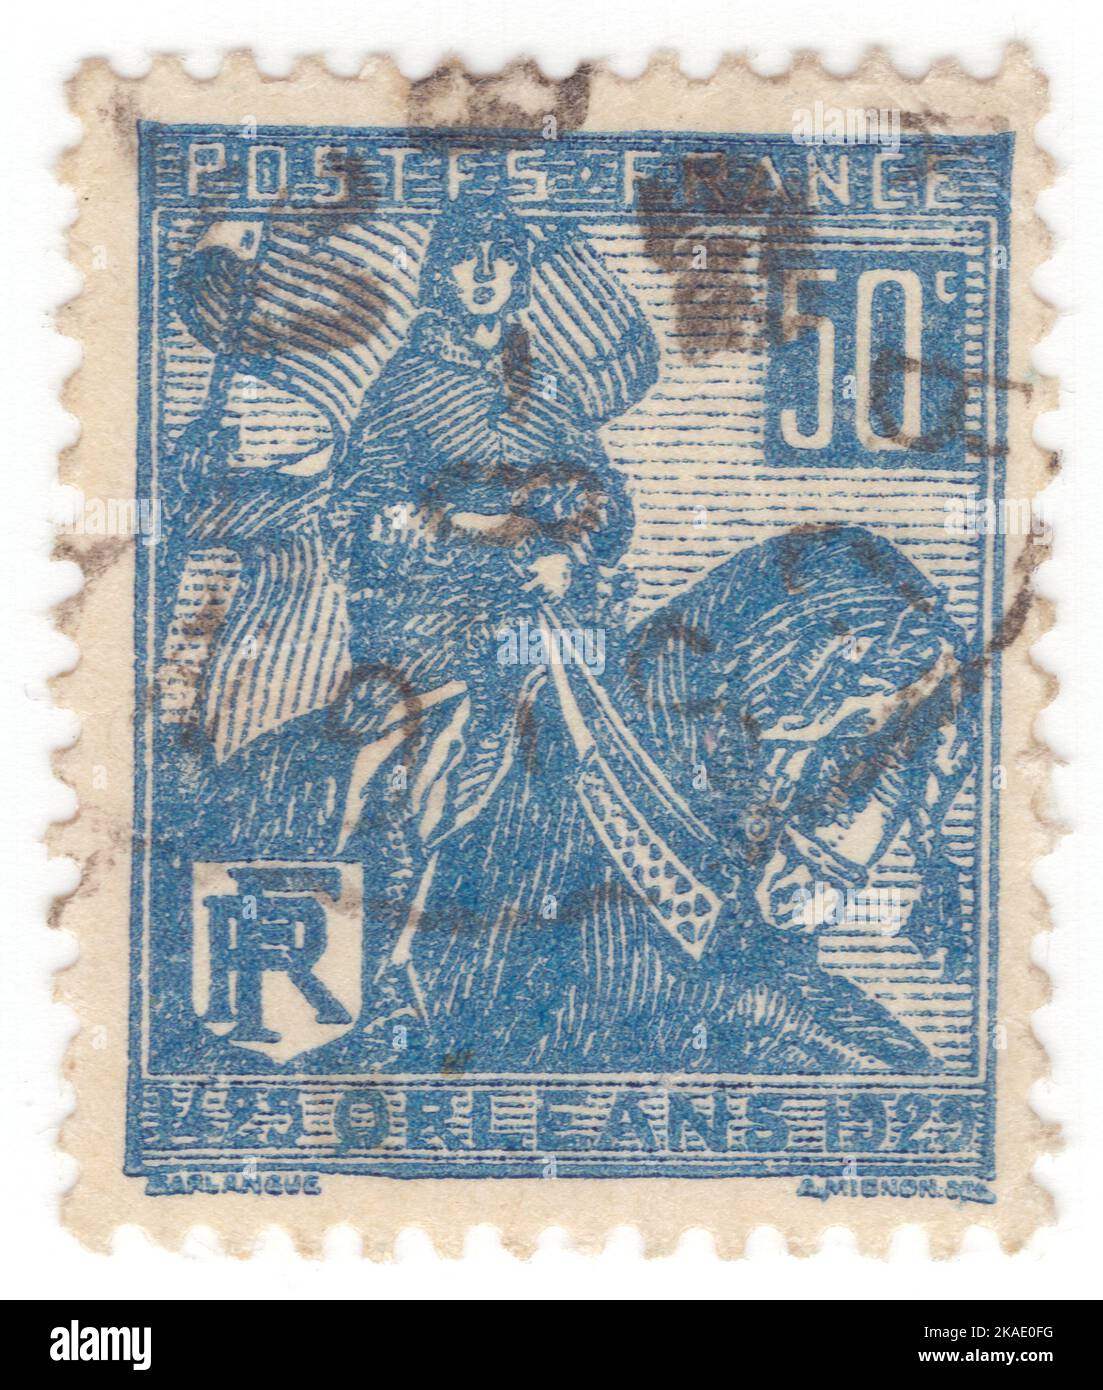 FRANKREICH - 1929. März: Eine 50 Centimes stumpfblaue Briefmarke, die das Porträt von Jeanne d'Arc auf dem Pferderücken zeigt. 500.. Jahrestag des Reliefs von Orleans durch die französischen Truppen unter der Führung von Jeanne d'Arc. Sie war eine schutzpatronin Frankreichs und wurde als Verteidigerin der französischen Nation für ihre Rolle bei der Belagerung von Orléans und ihr Beharben auf der Krönung von Karl VII. Von Frankreich während des Hundertjährigen Krieges geehrt. Sie erklärte, sie handle unter göttlicher Führung und wurde eine militärische Führerin, die über die Geschlechterrollen hinausging und Anerkennung als Retterin Frankreichs erlangte Stockfoto